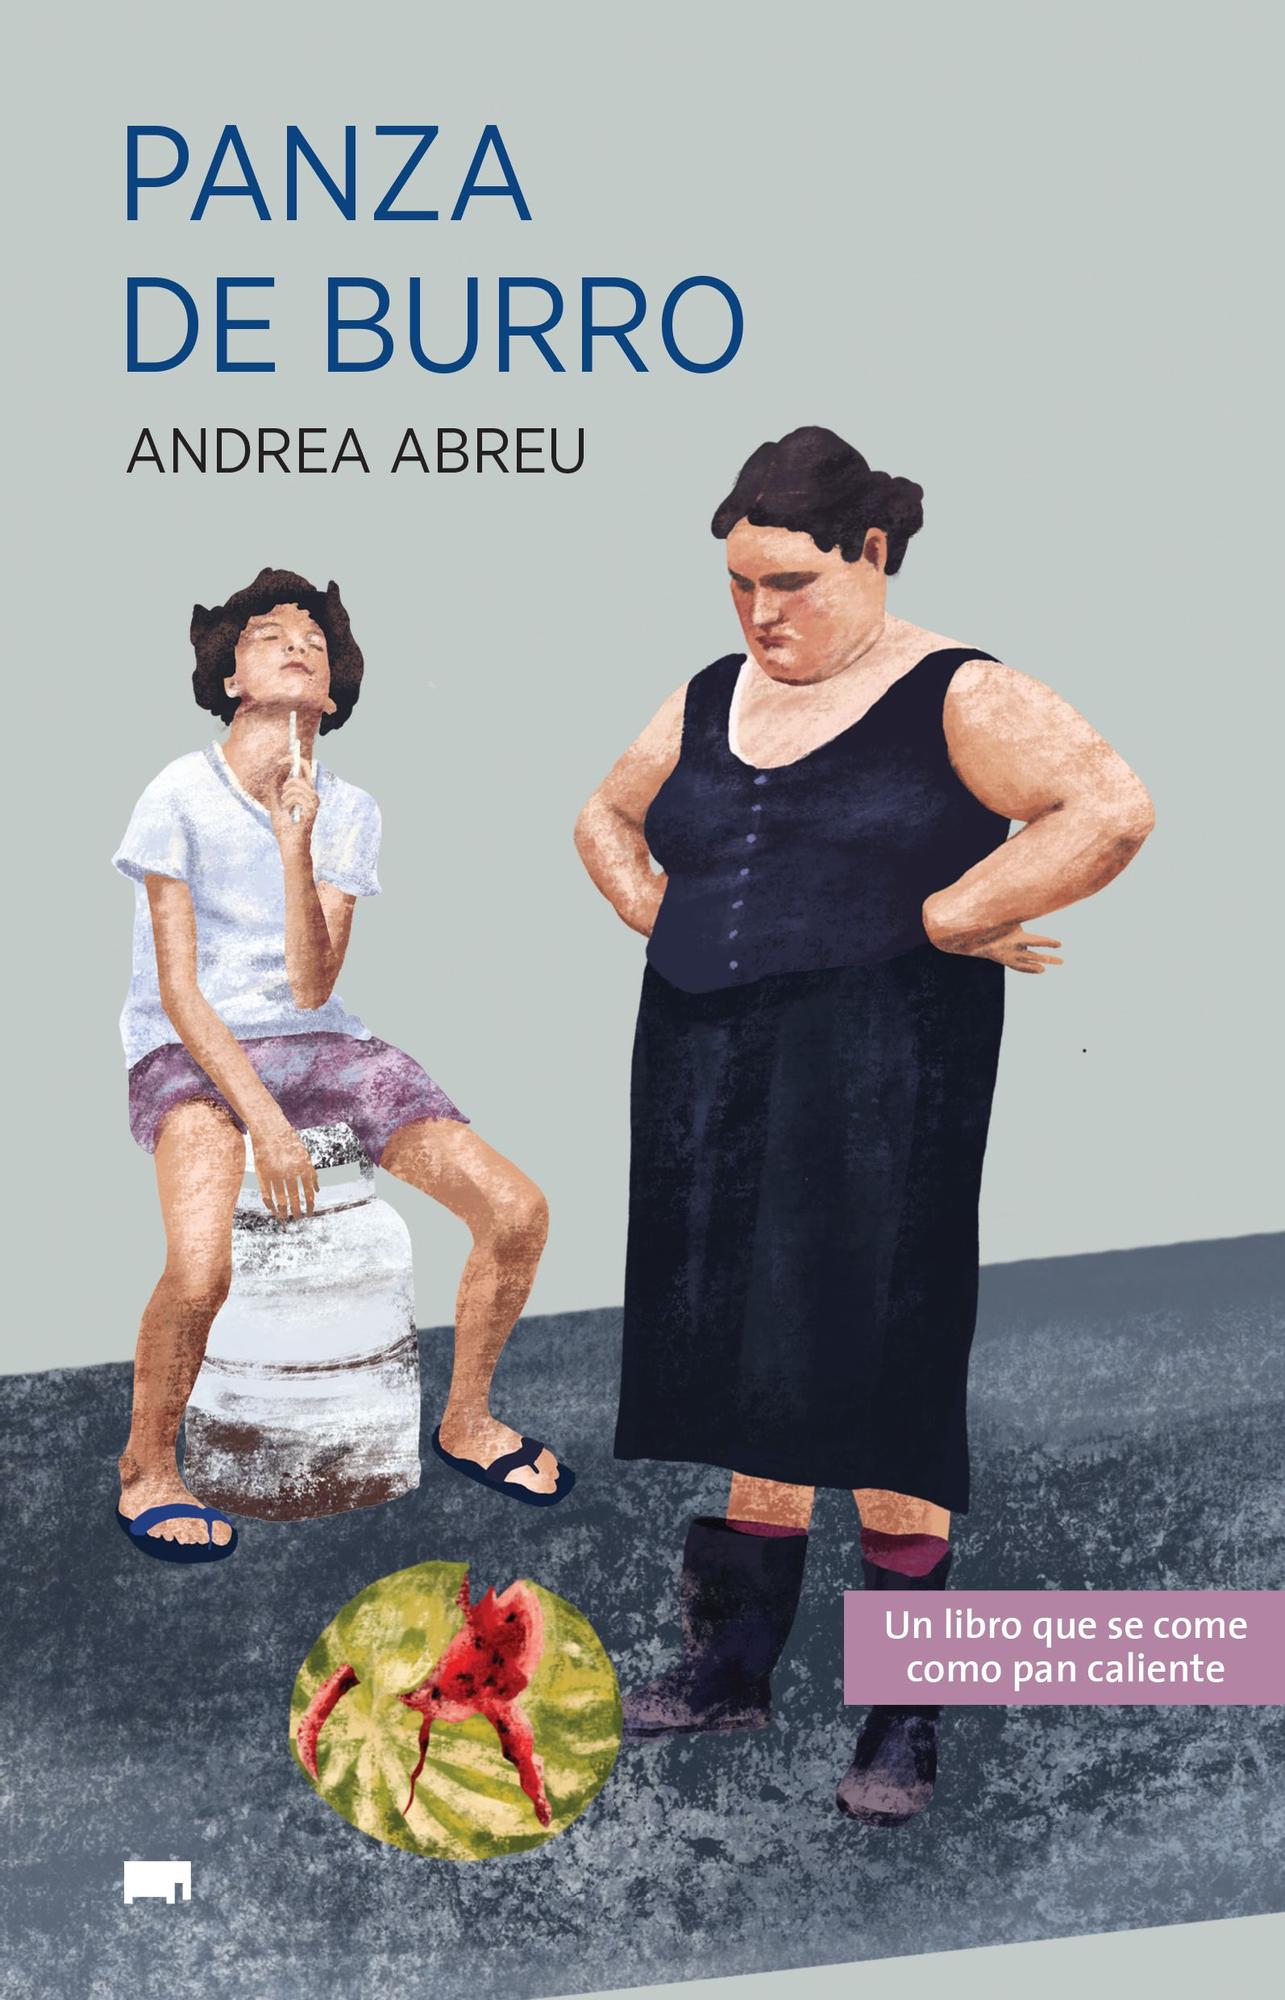 Portada del libro Panza de burro, de Andrea Abreu (Elefante Editorial).